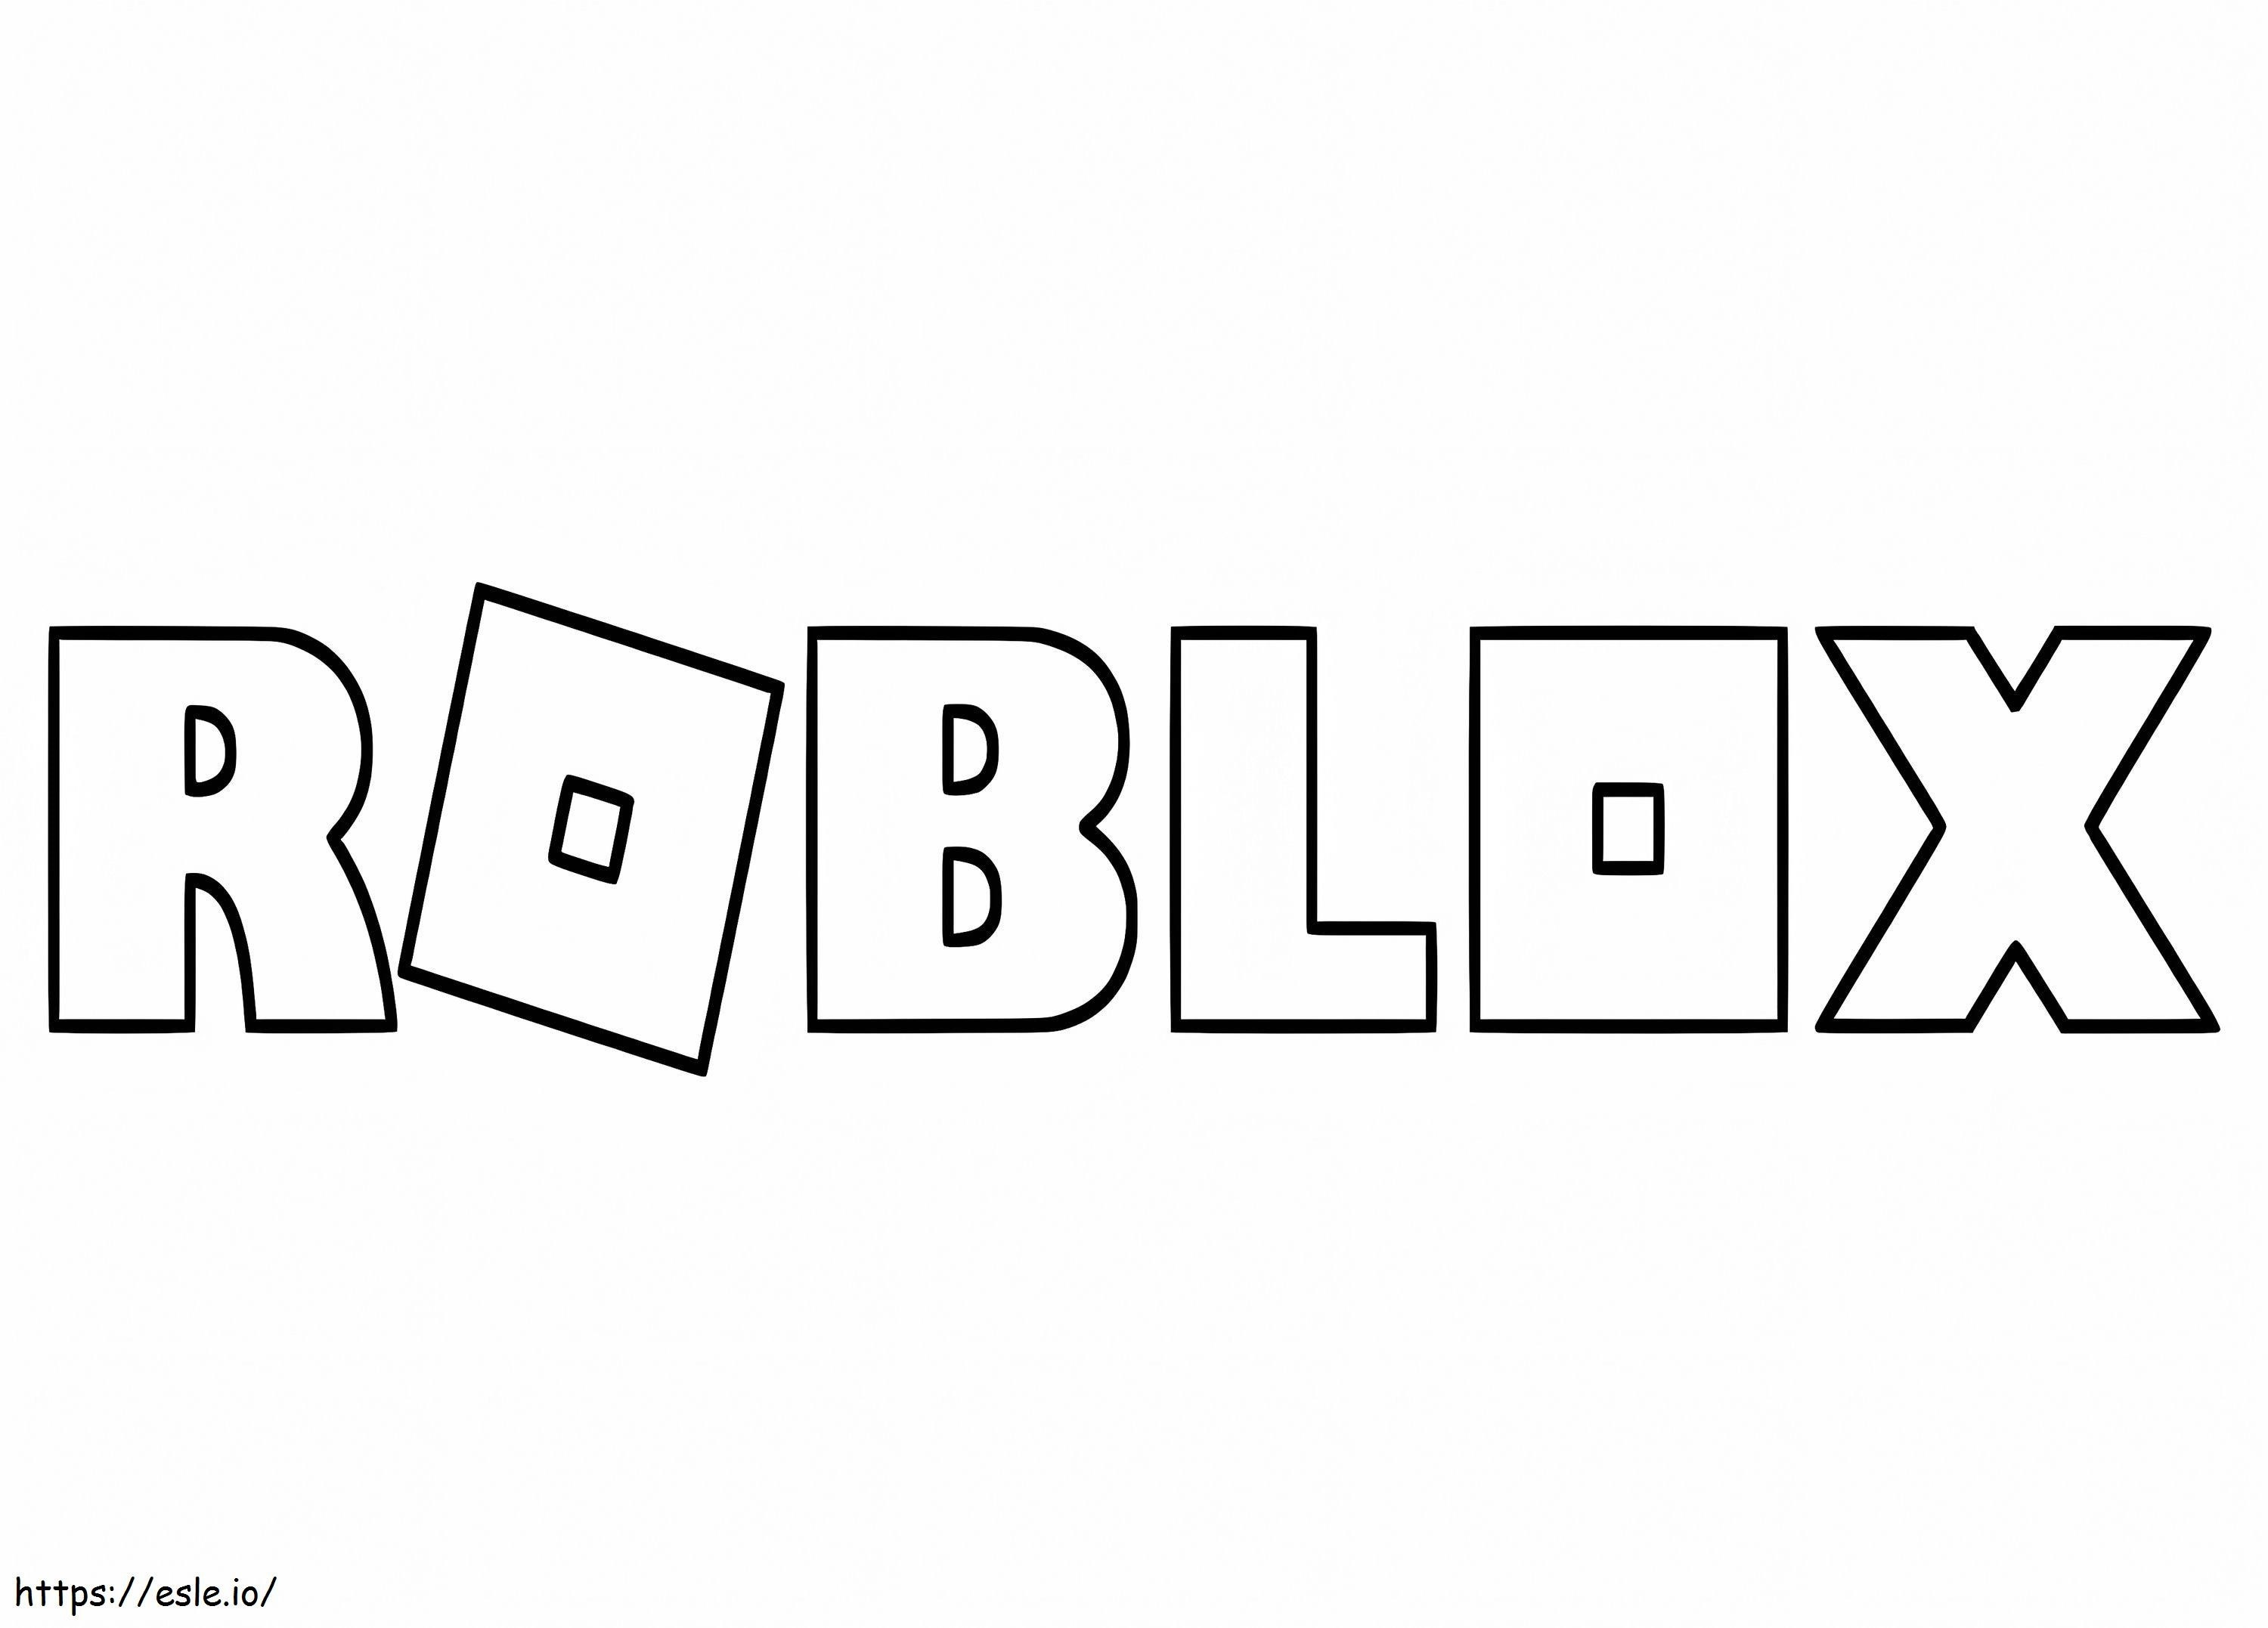 Nuevo logotipo de Roblox para colorear